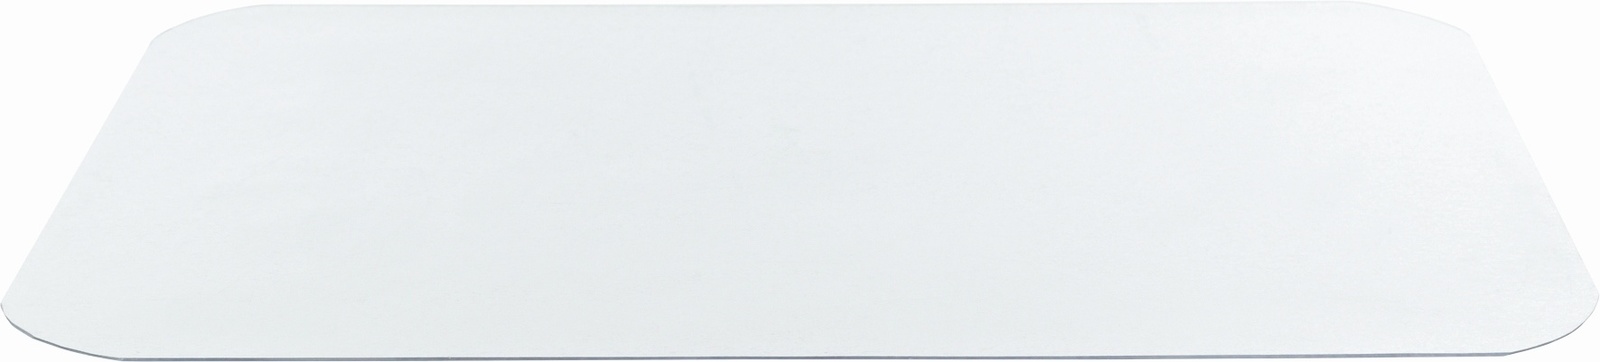 Trixie Trixie коврик под миску, прозрачный (48×30см)